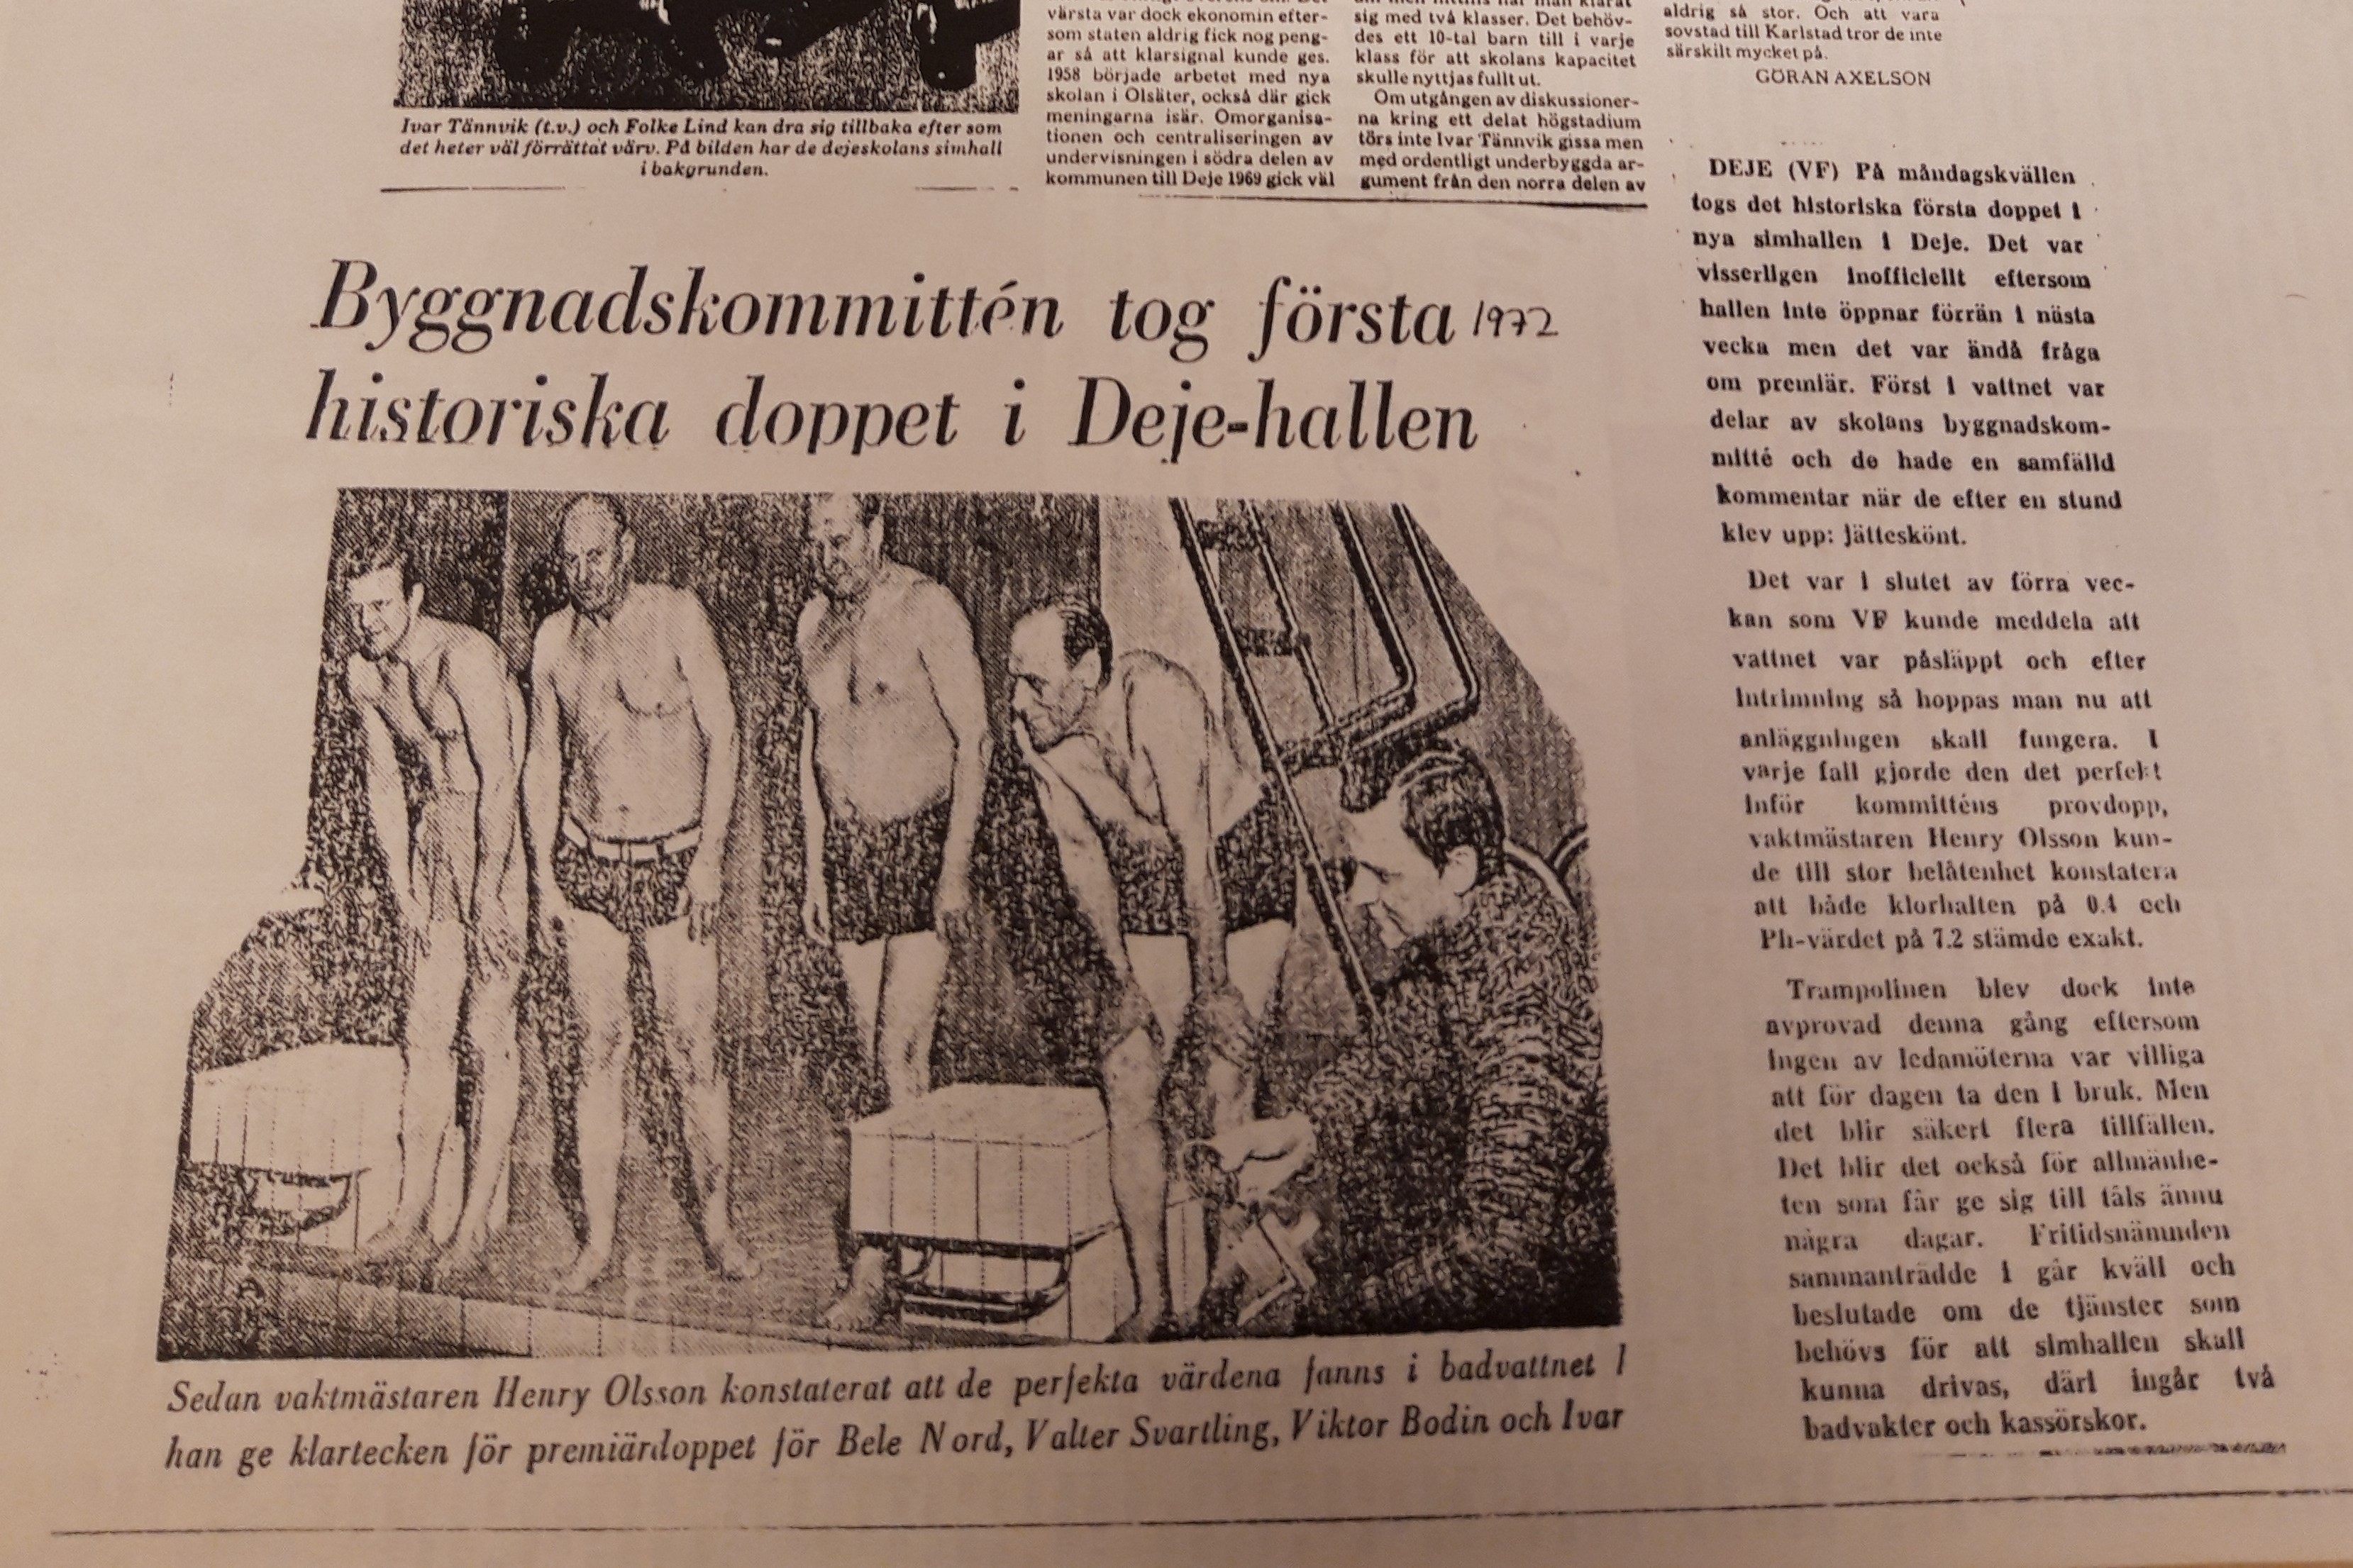 Tidningsurklipp från 1972 om simhallen i Deje